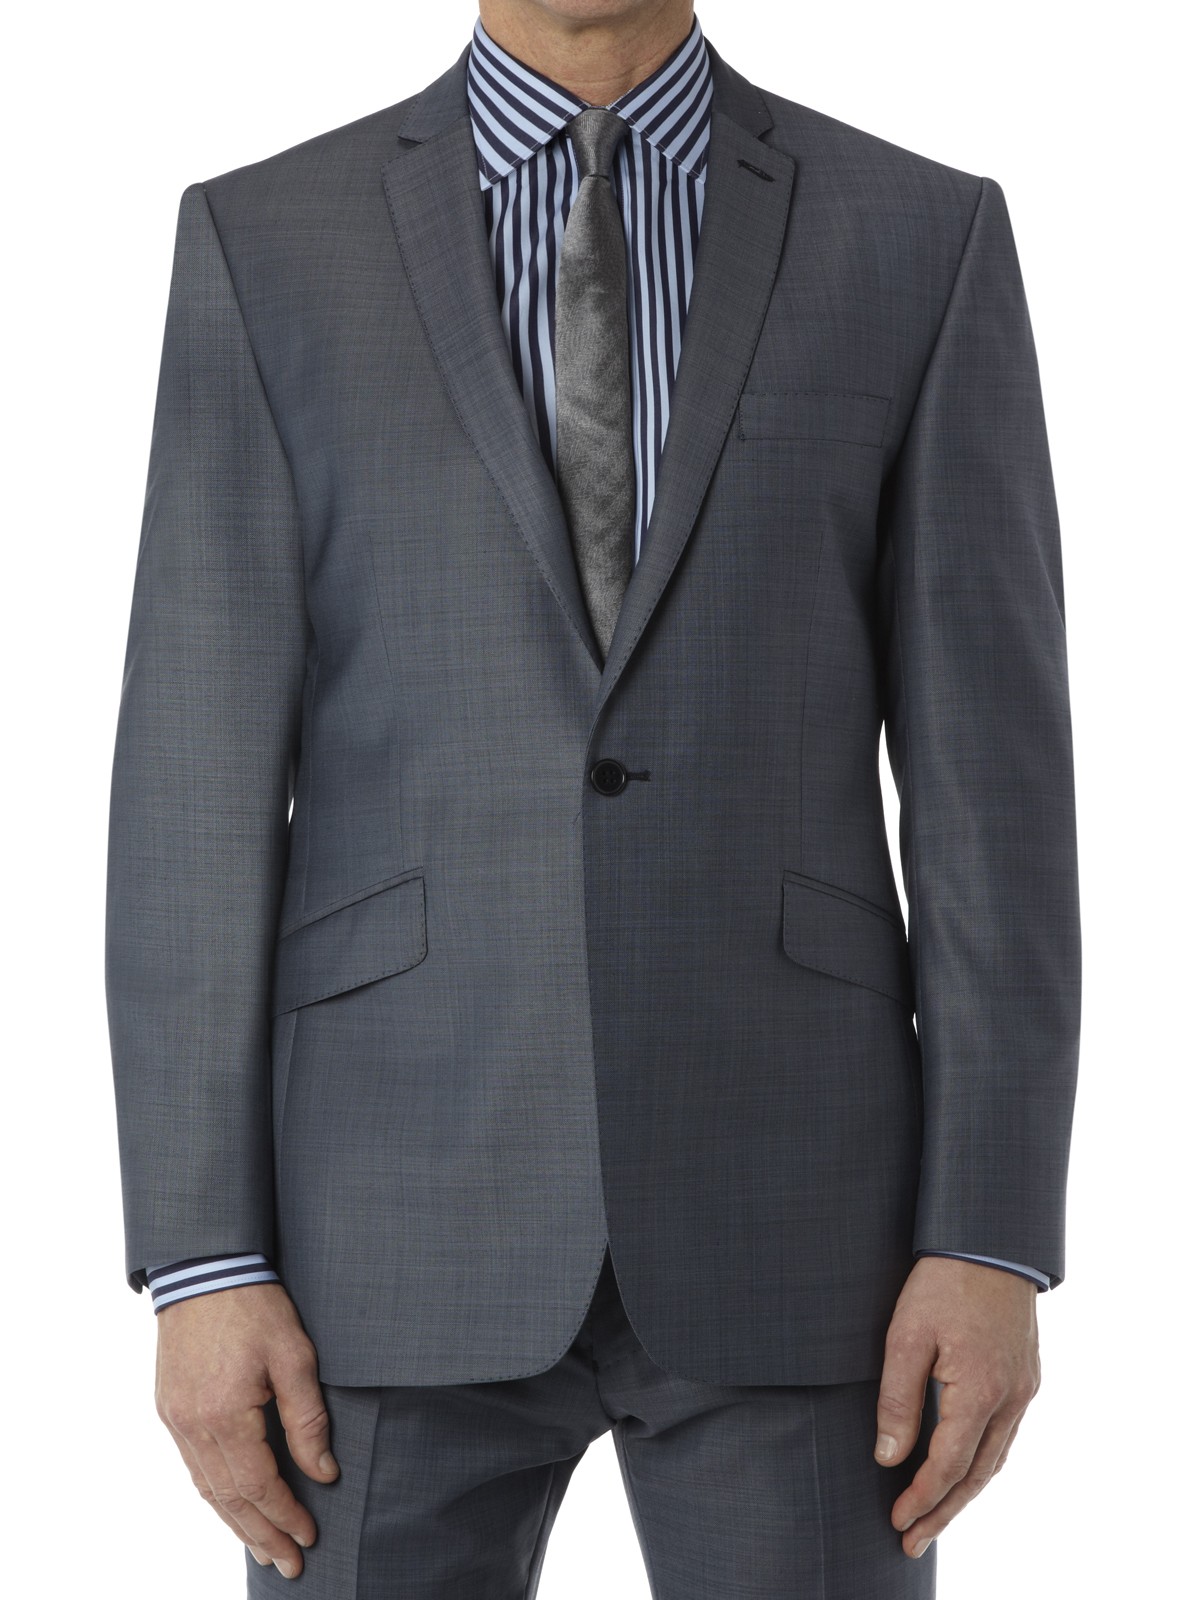 Notch Lapel Blue Pick Suit Jacket - Fashion Groom